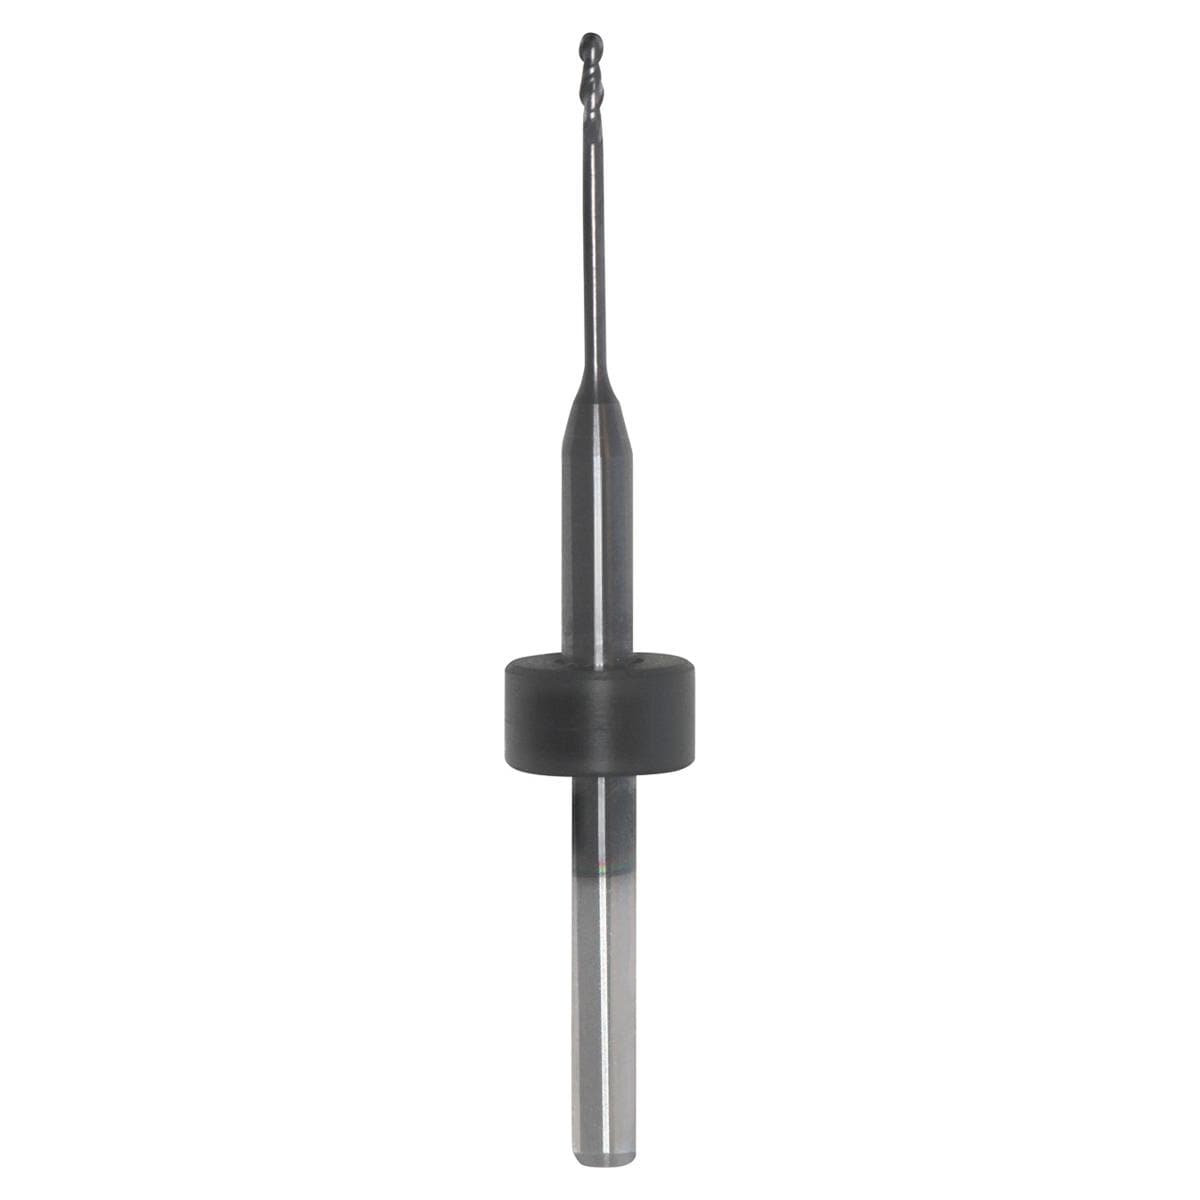 CAD/CAM-Fräser für Zirkon, Schaft Ø 3 mm - kompatibel mit Imes Icore - Figur XSC I3010R, Ø 1,0 mm, 2-schichtig